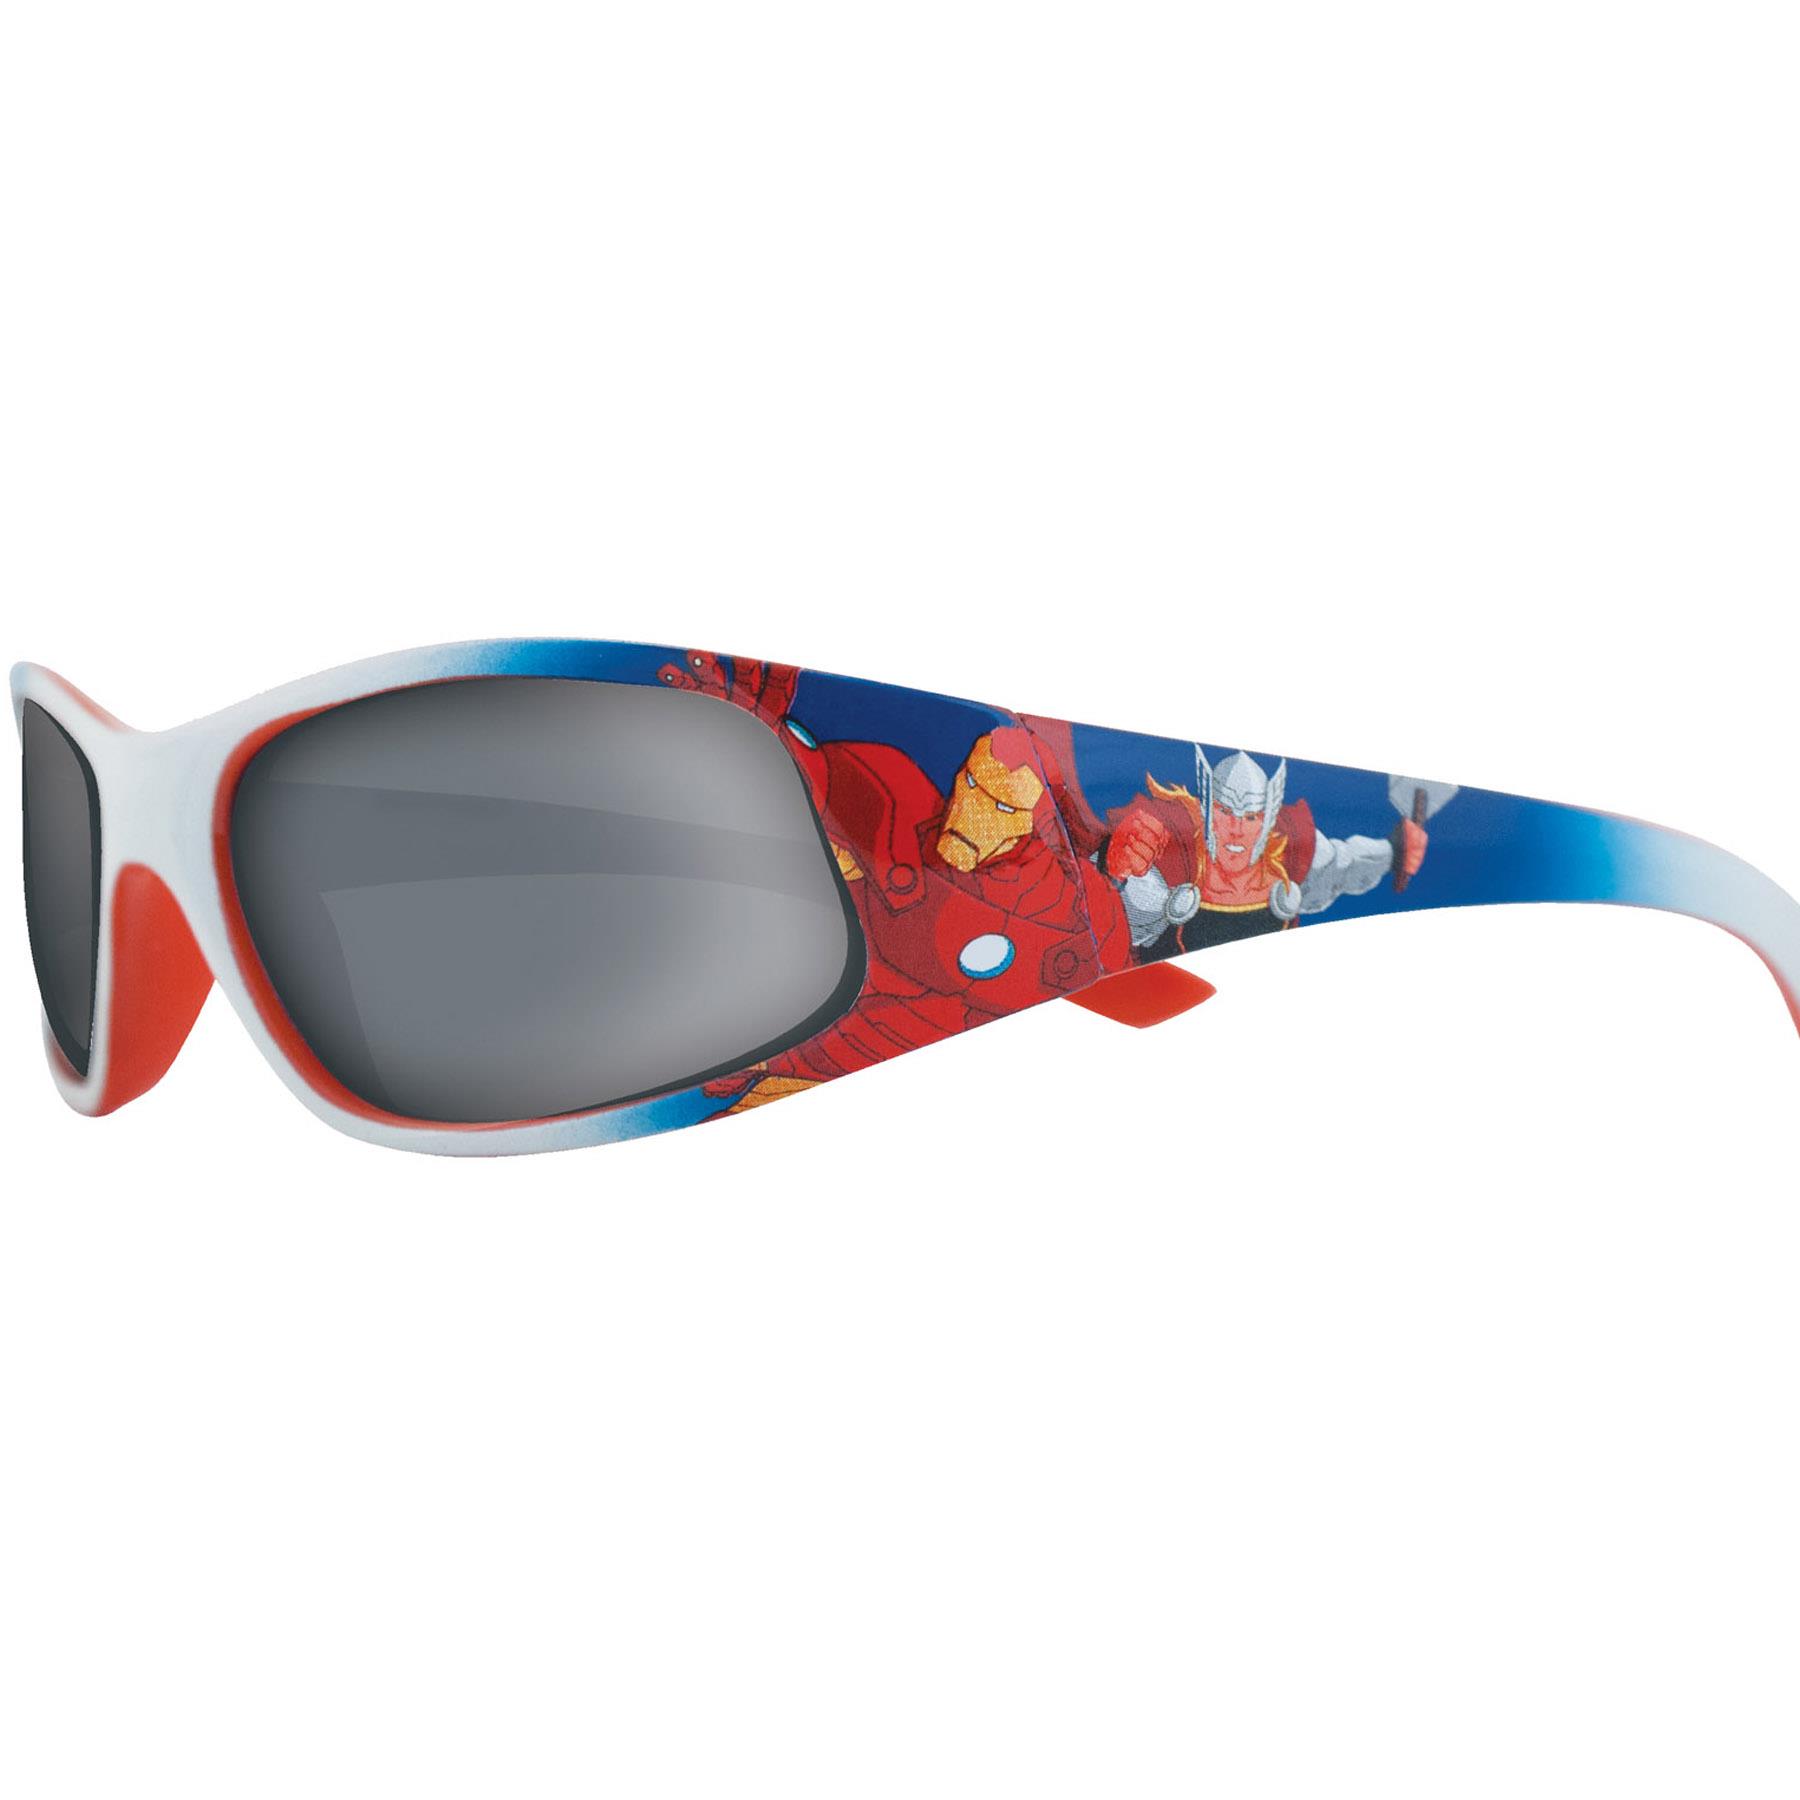 Superheroes Children's Sunglasses UV protection for Holiday - Marvel Avengers AVENG1